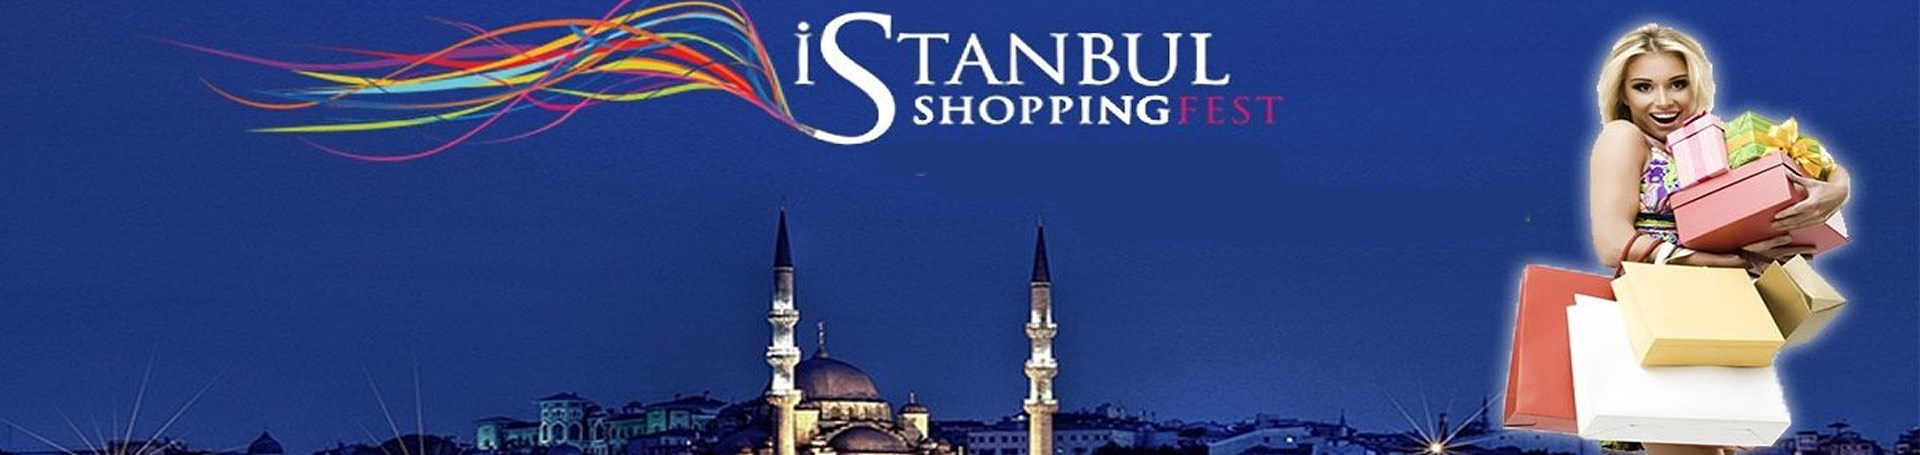 خرید از فستیوال های خرید استانبول